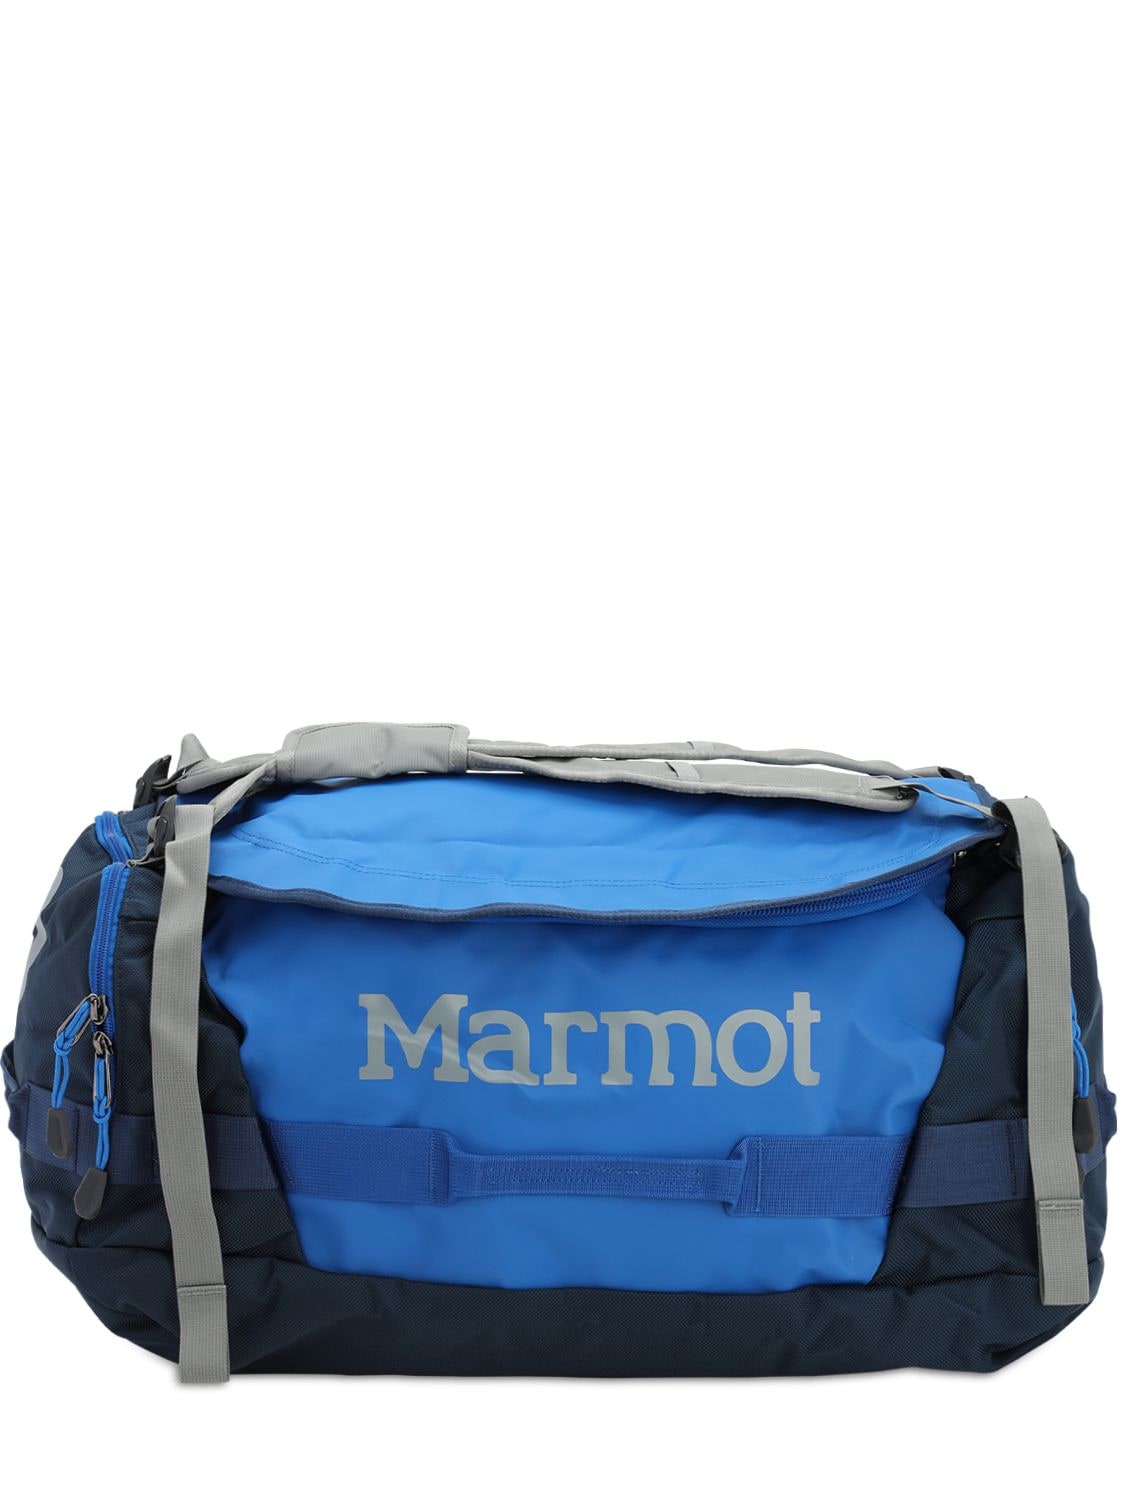 Marmot Medium Long Hauler Duffle Bag In Blue,navy